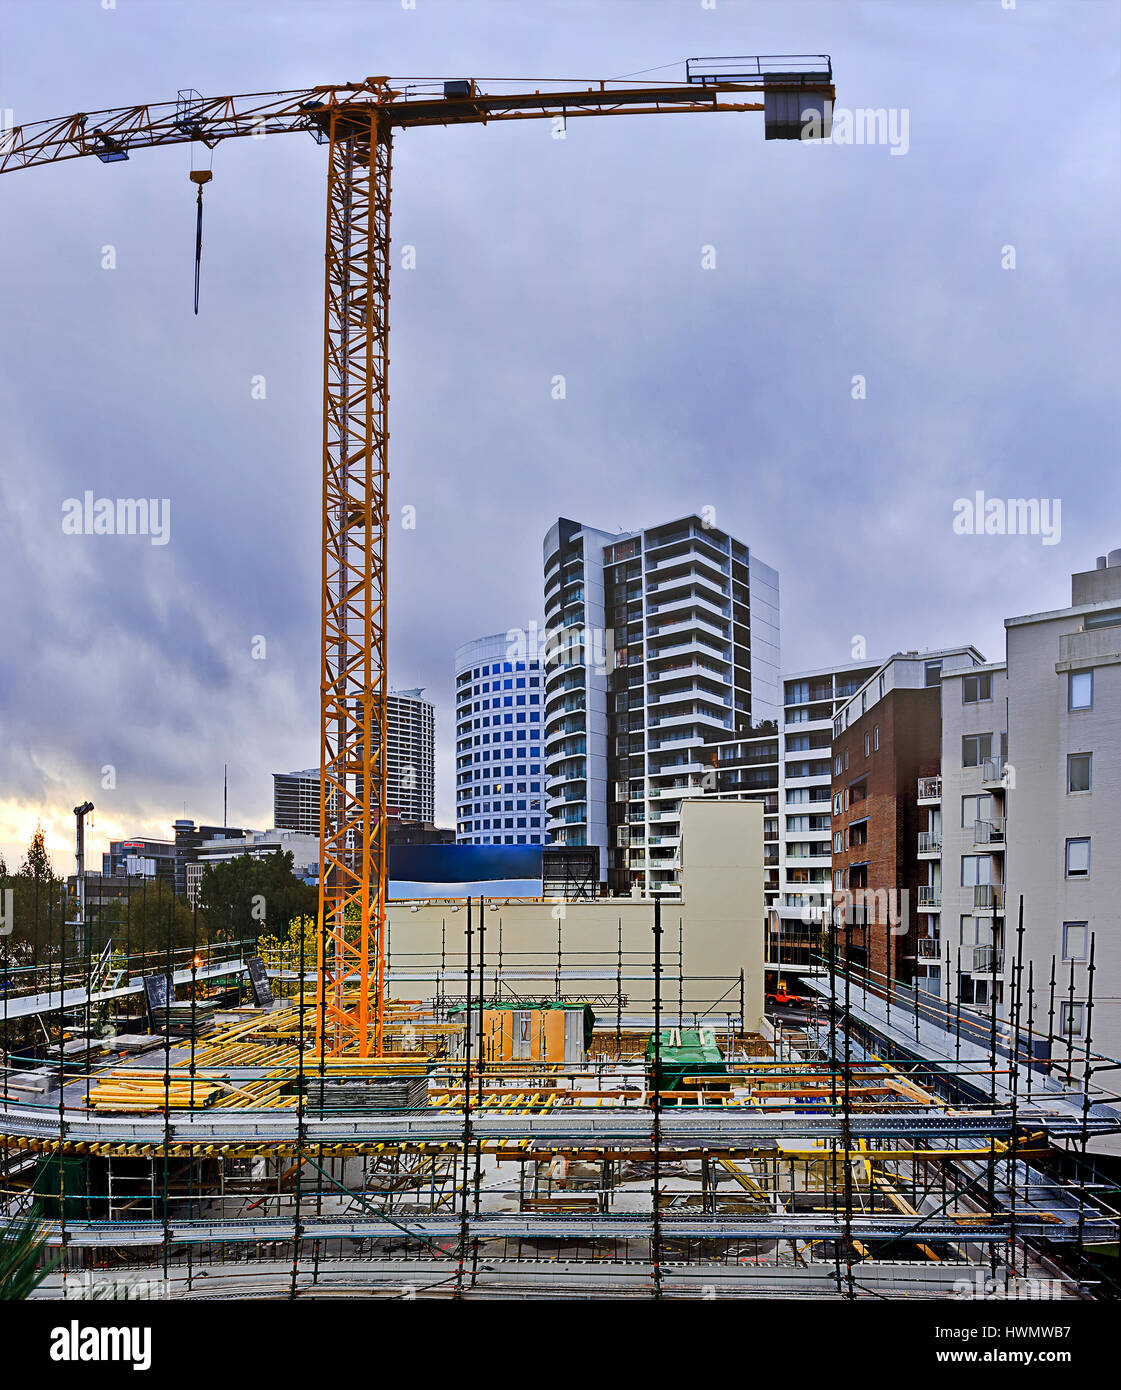 El crecimiento del mercado inmobiliario de Sydney - modern consruction sitio en St Leonards para construir más viviendas para satisfacer la demanda de vivienda. Foto de stock